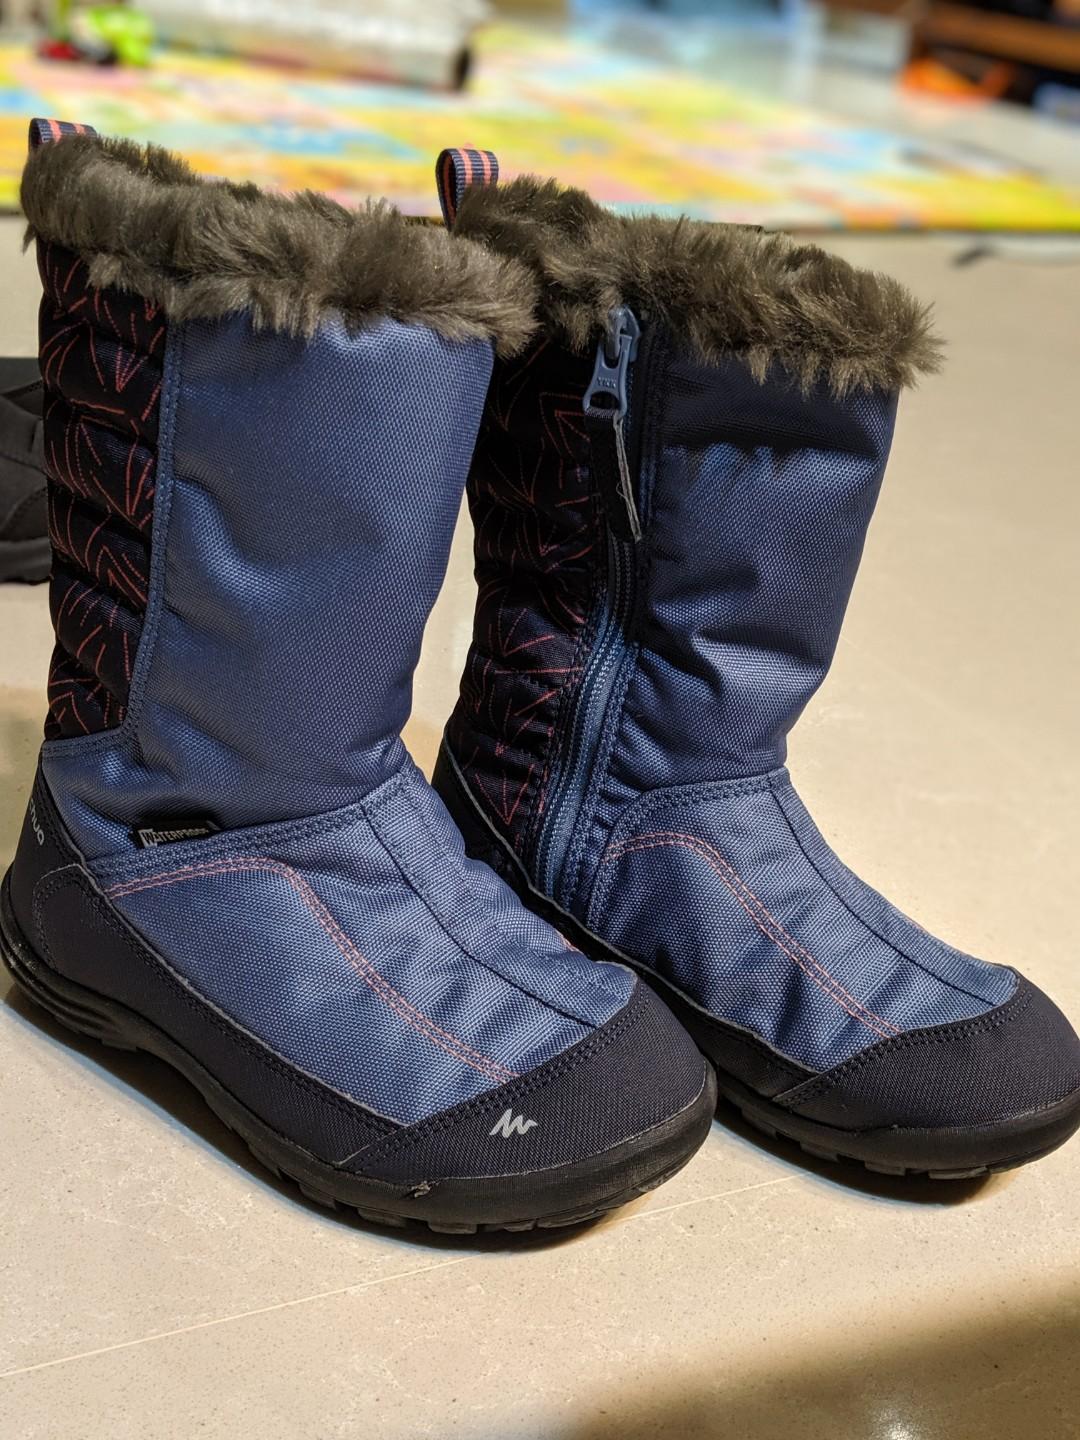 quechua kids boots